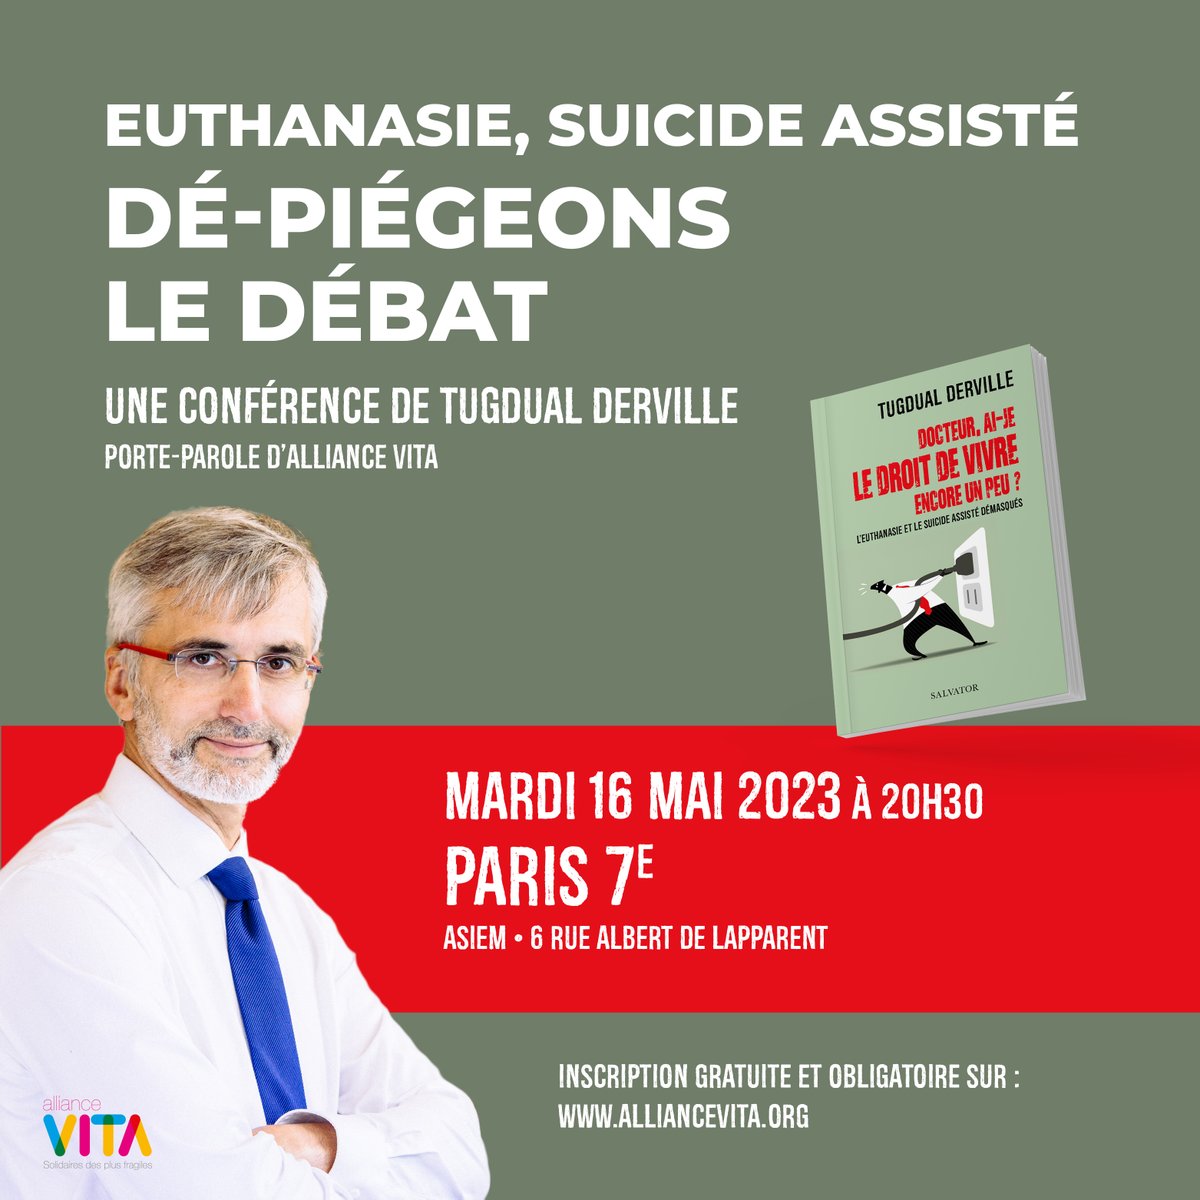 💥Ce soir, @TDerville donne sa conférence à Paris à 20h30, venez nombreux ! 
@Alliancevita75

#findevie #suicideassisté #suicideassisté #préventionsuicide #paris #conférenceparis